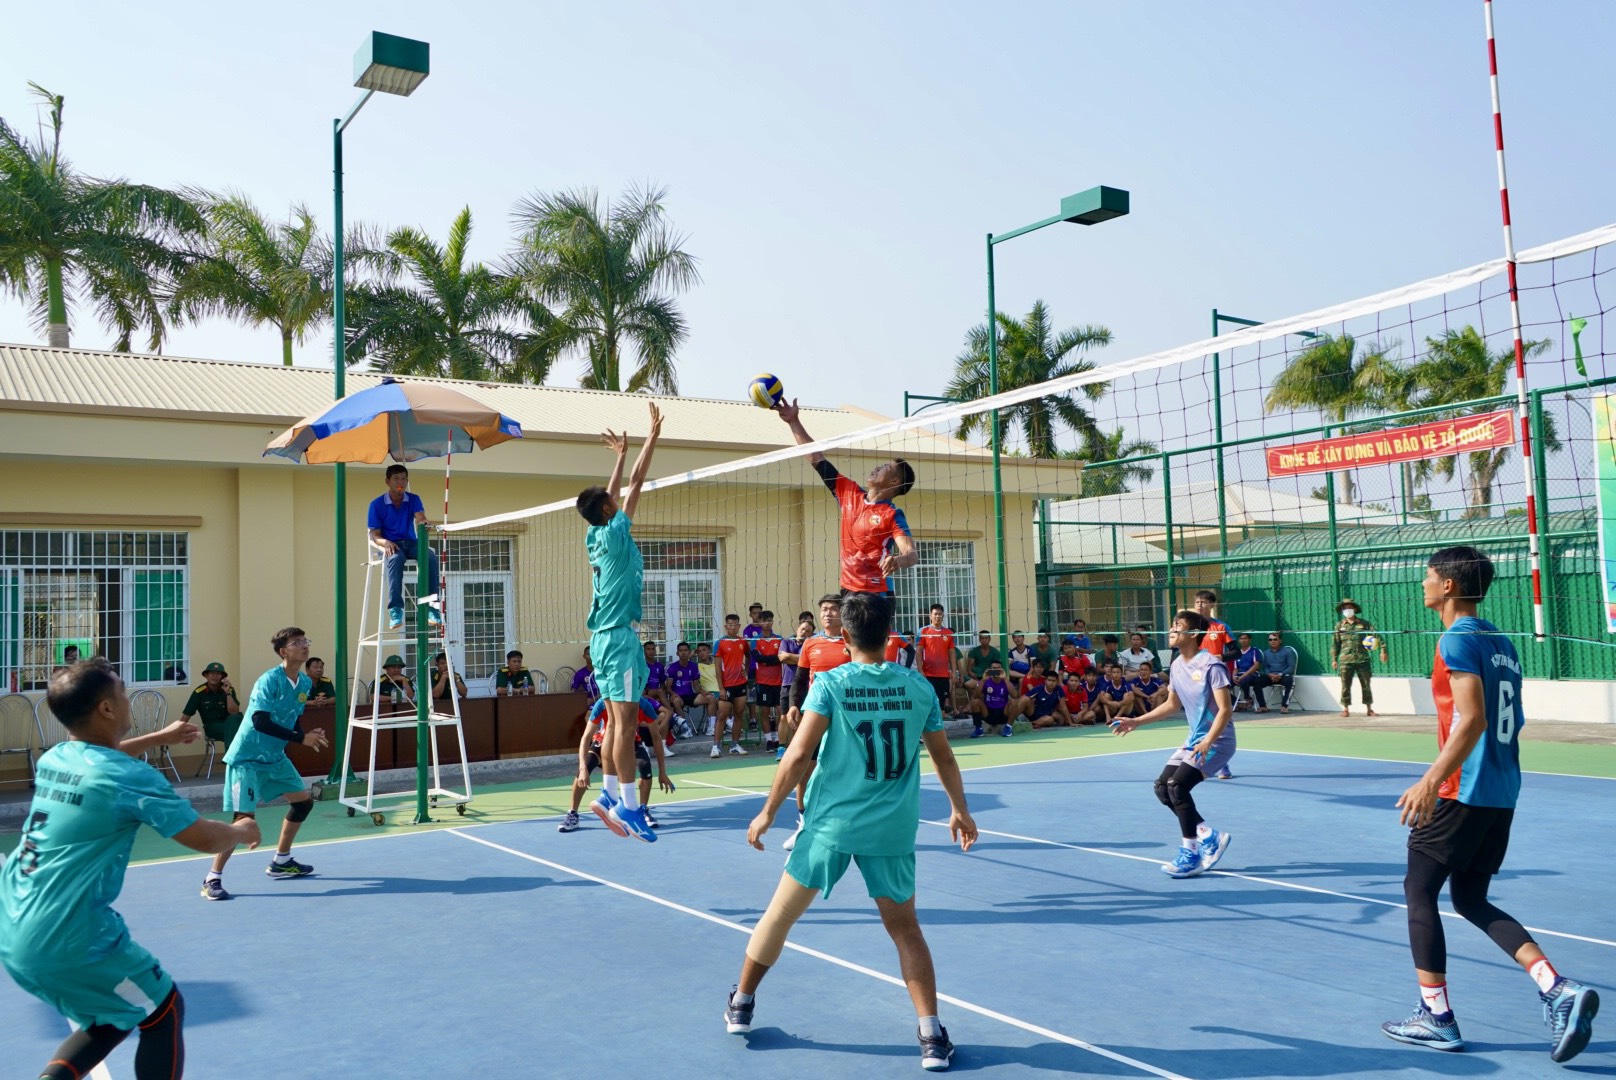 Trận đấu bóng chuyền giữa đội Bộ CHQS Bà Rịa - Vũng Tàu và Đồng Nai.